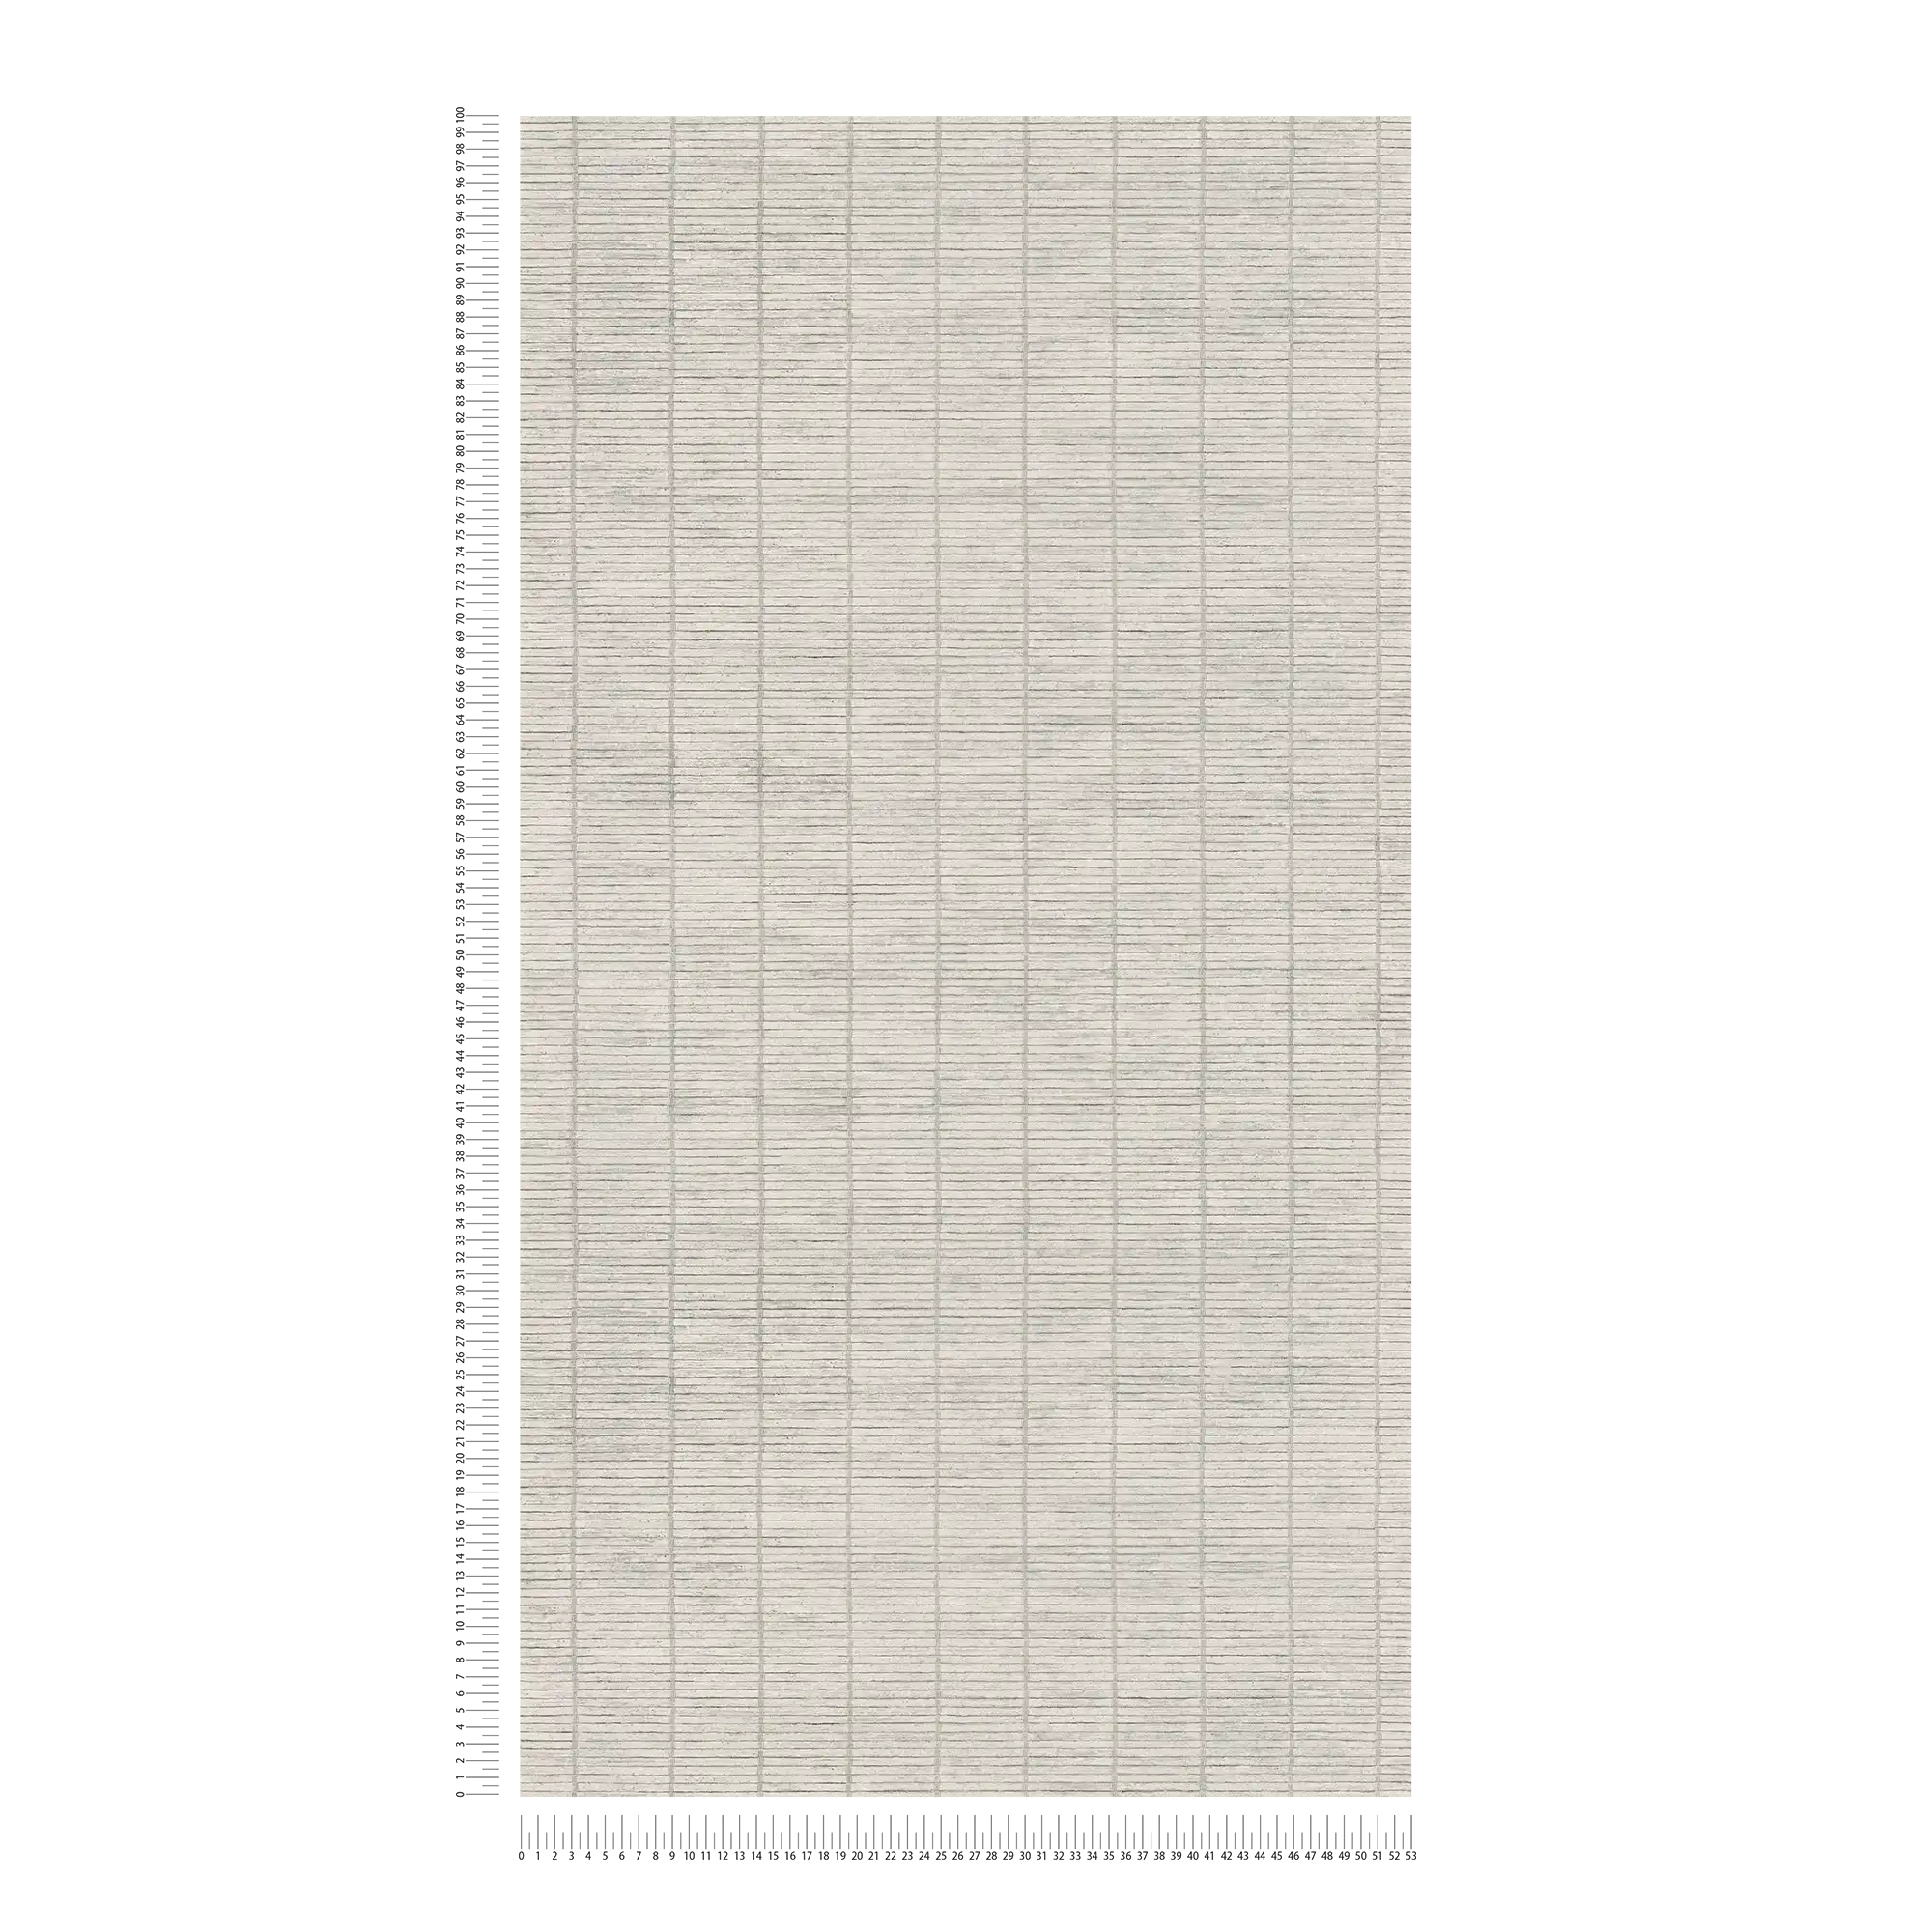             Carta da parati non tessuta con effetto divisorio in bambù in stile giapponese - grigio
        